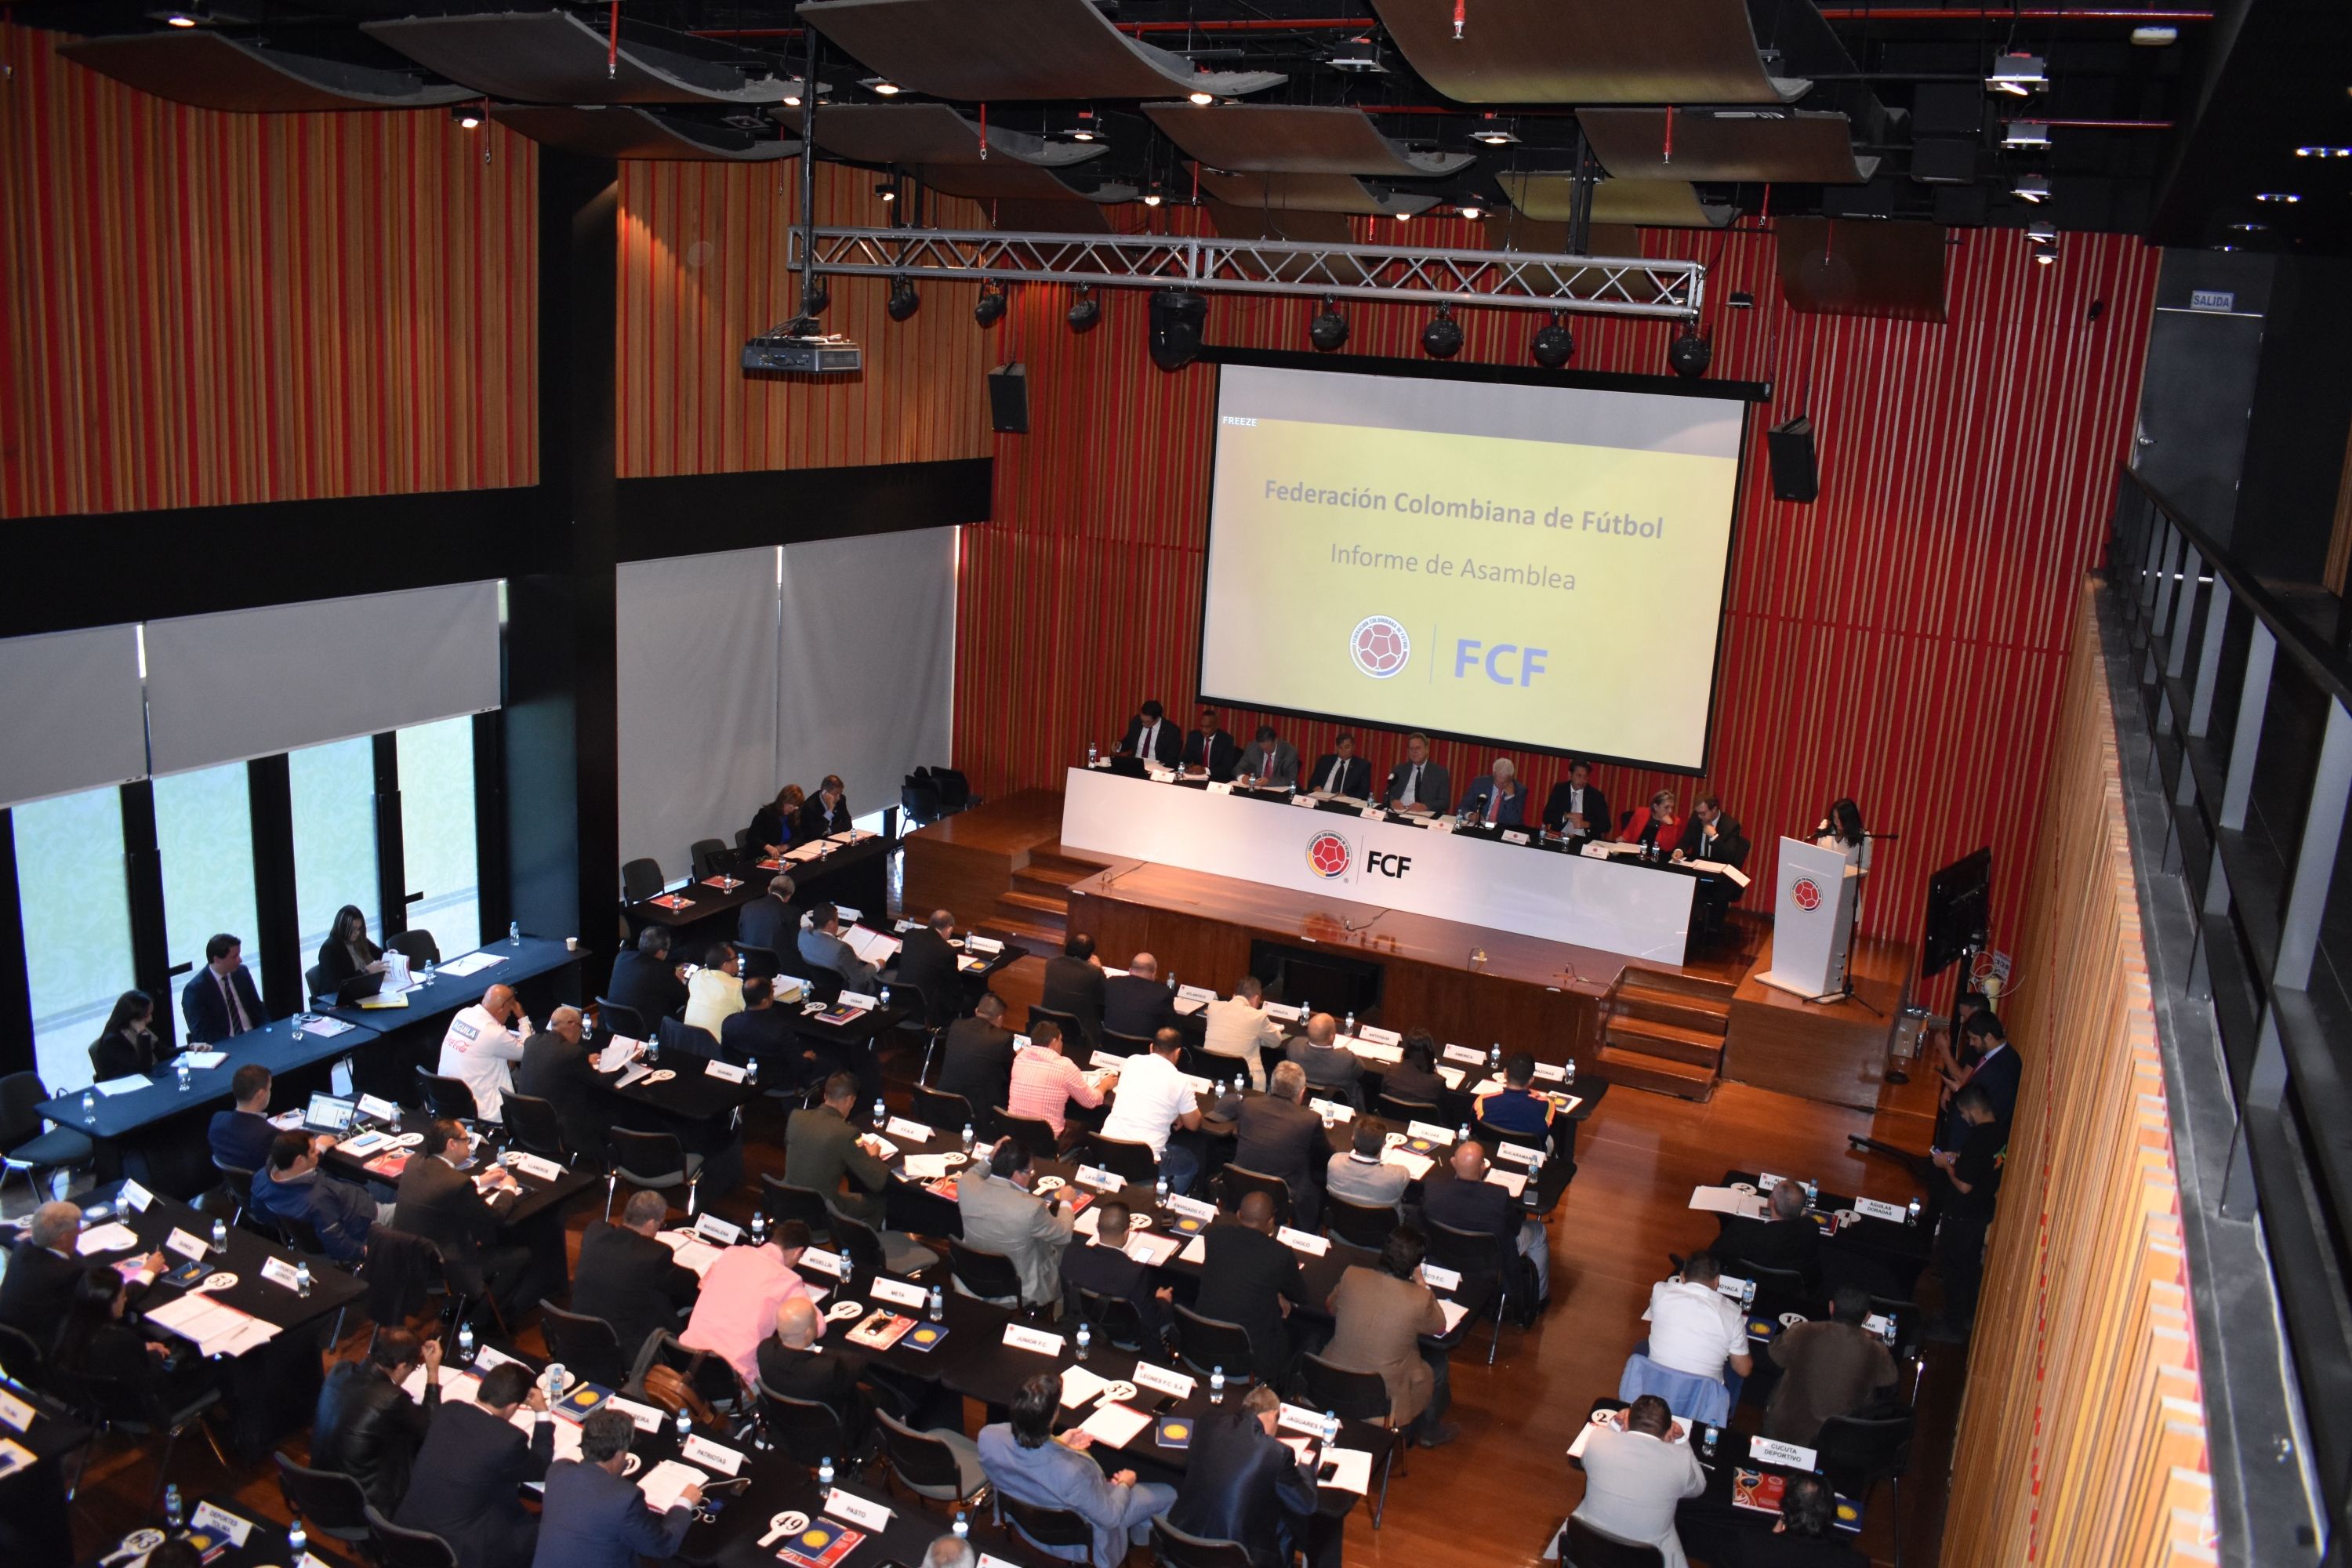 Este miércoles 8 de marzo de 2023 se llevó a cabo la Asamblea Ordinaria de la Dimayor, Difútbol y Federación Colombiana de Fútbol. FCF.